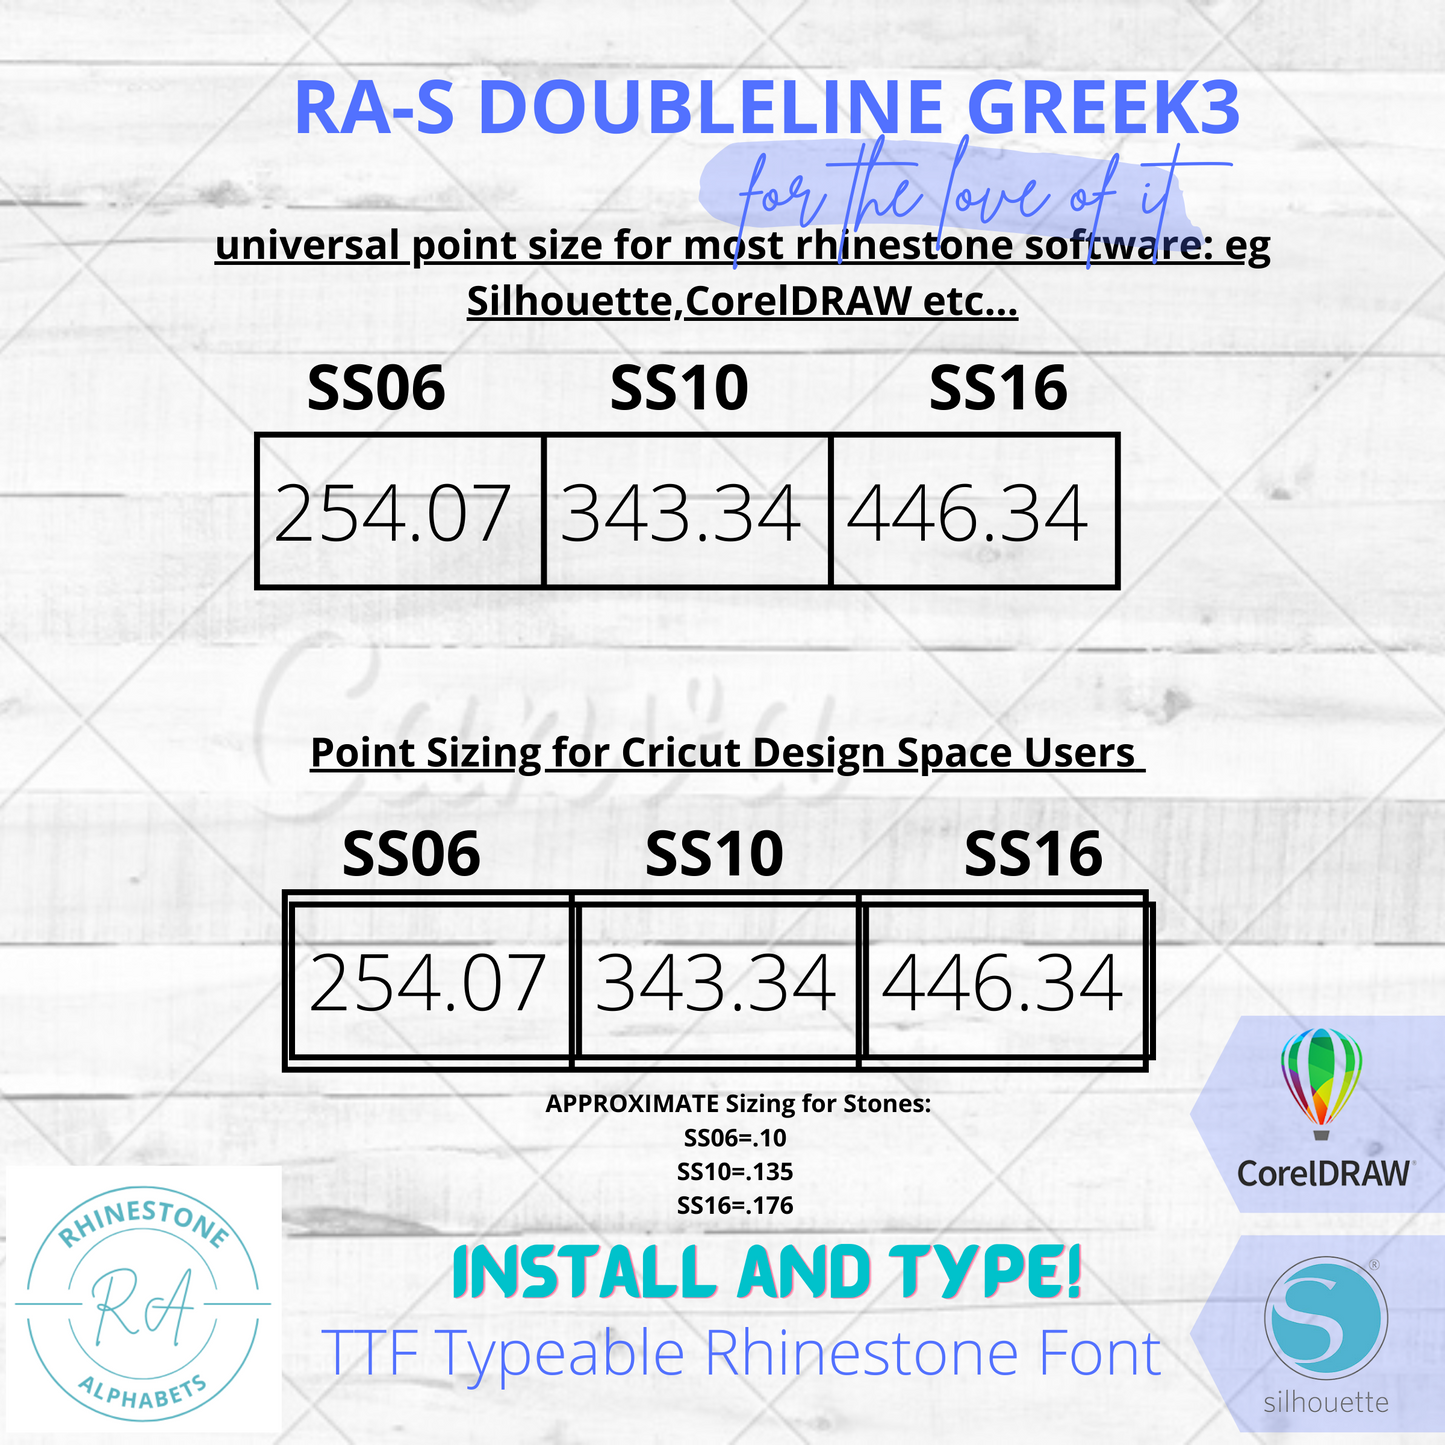 RA-S Doubleline Greek3